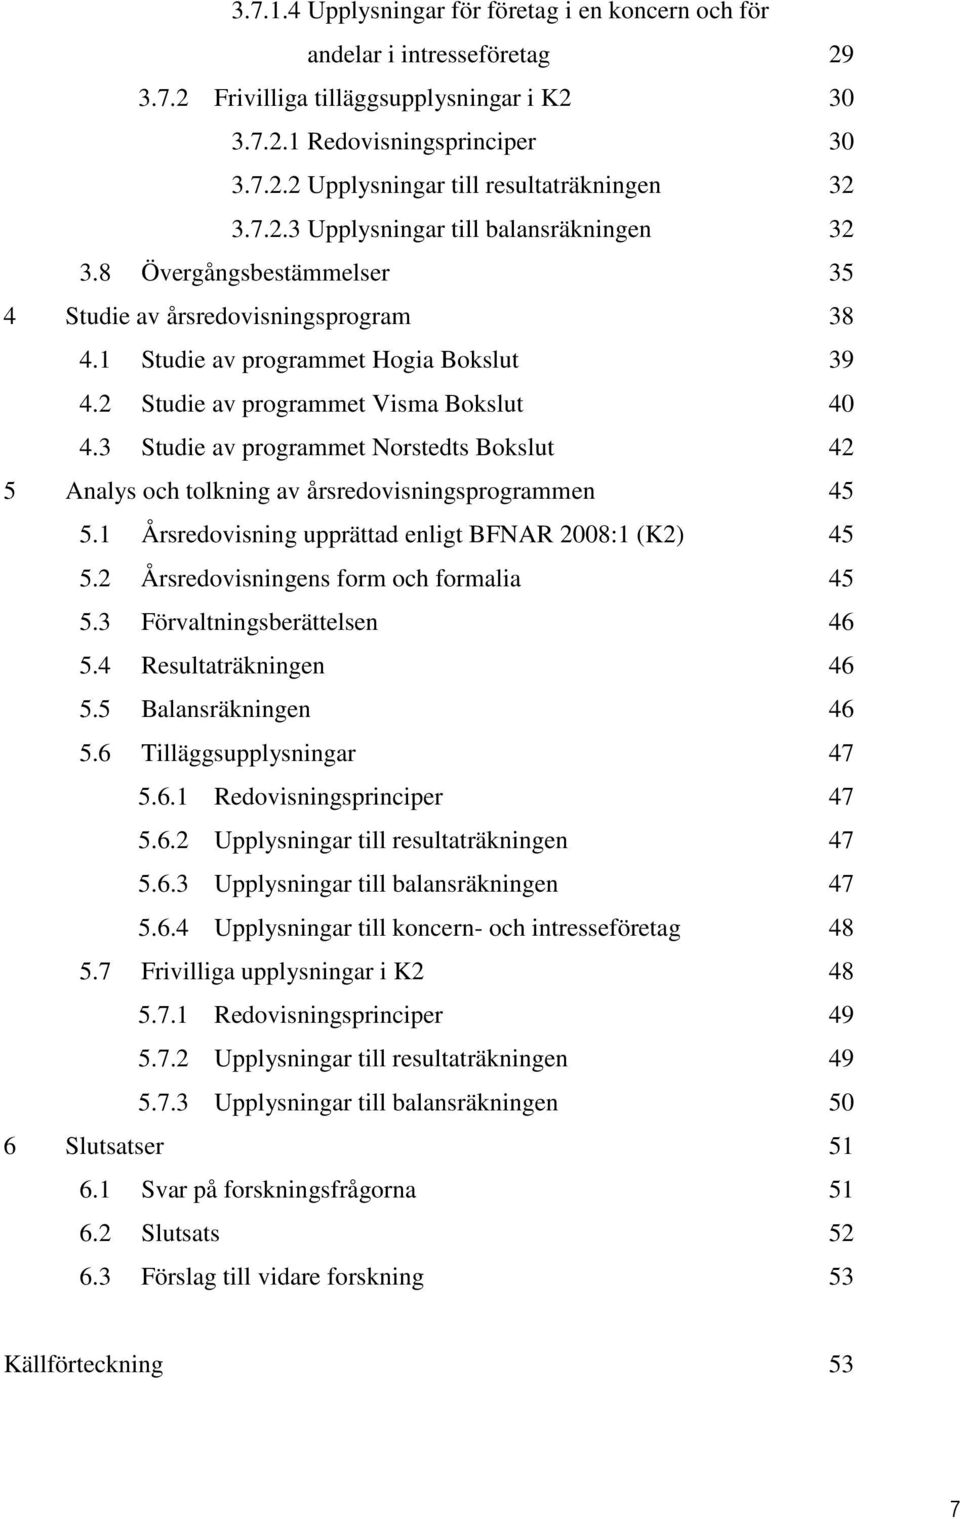 3 Studie av programmet Norstedts Bokslut 42 5 Analys och tolkning av årsredovisningsprogrammen 45 5.1 Årsredovisning upprättad enligt BFNAR 2008:1 (K2) 45 5.2 Årsredovisningens form och formalia 45 5.